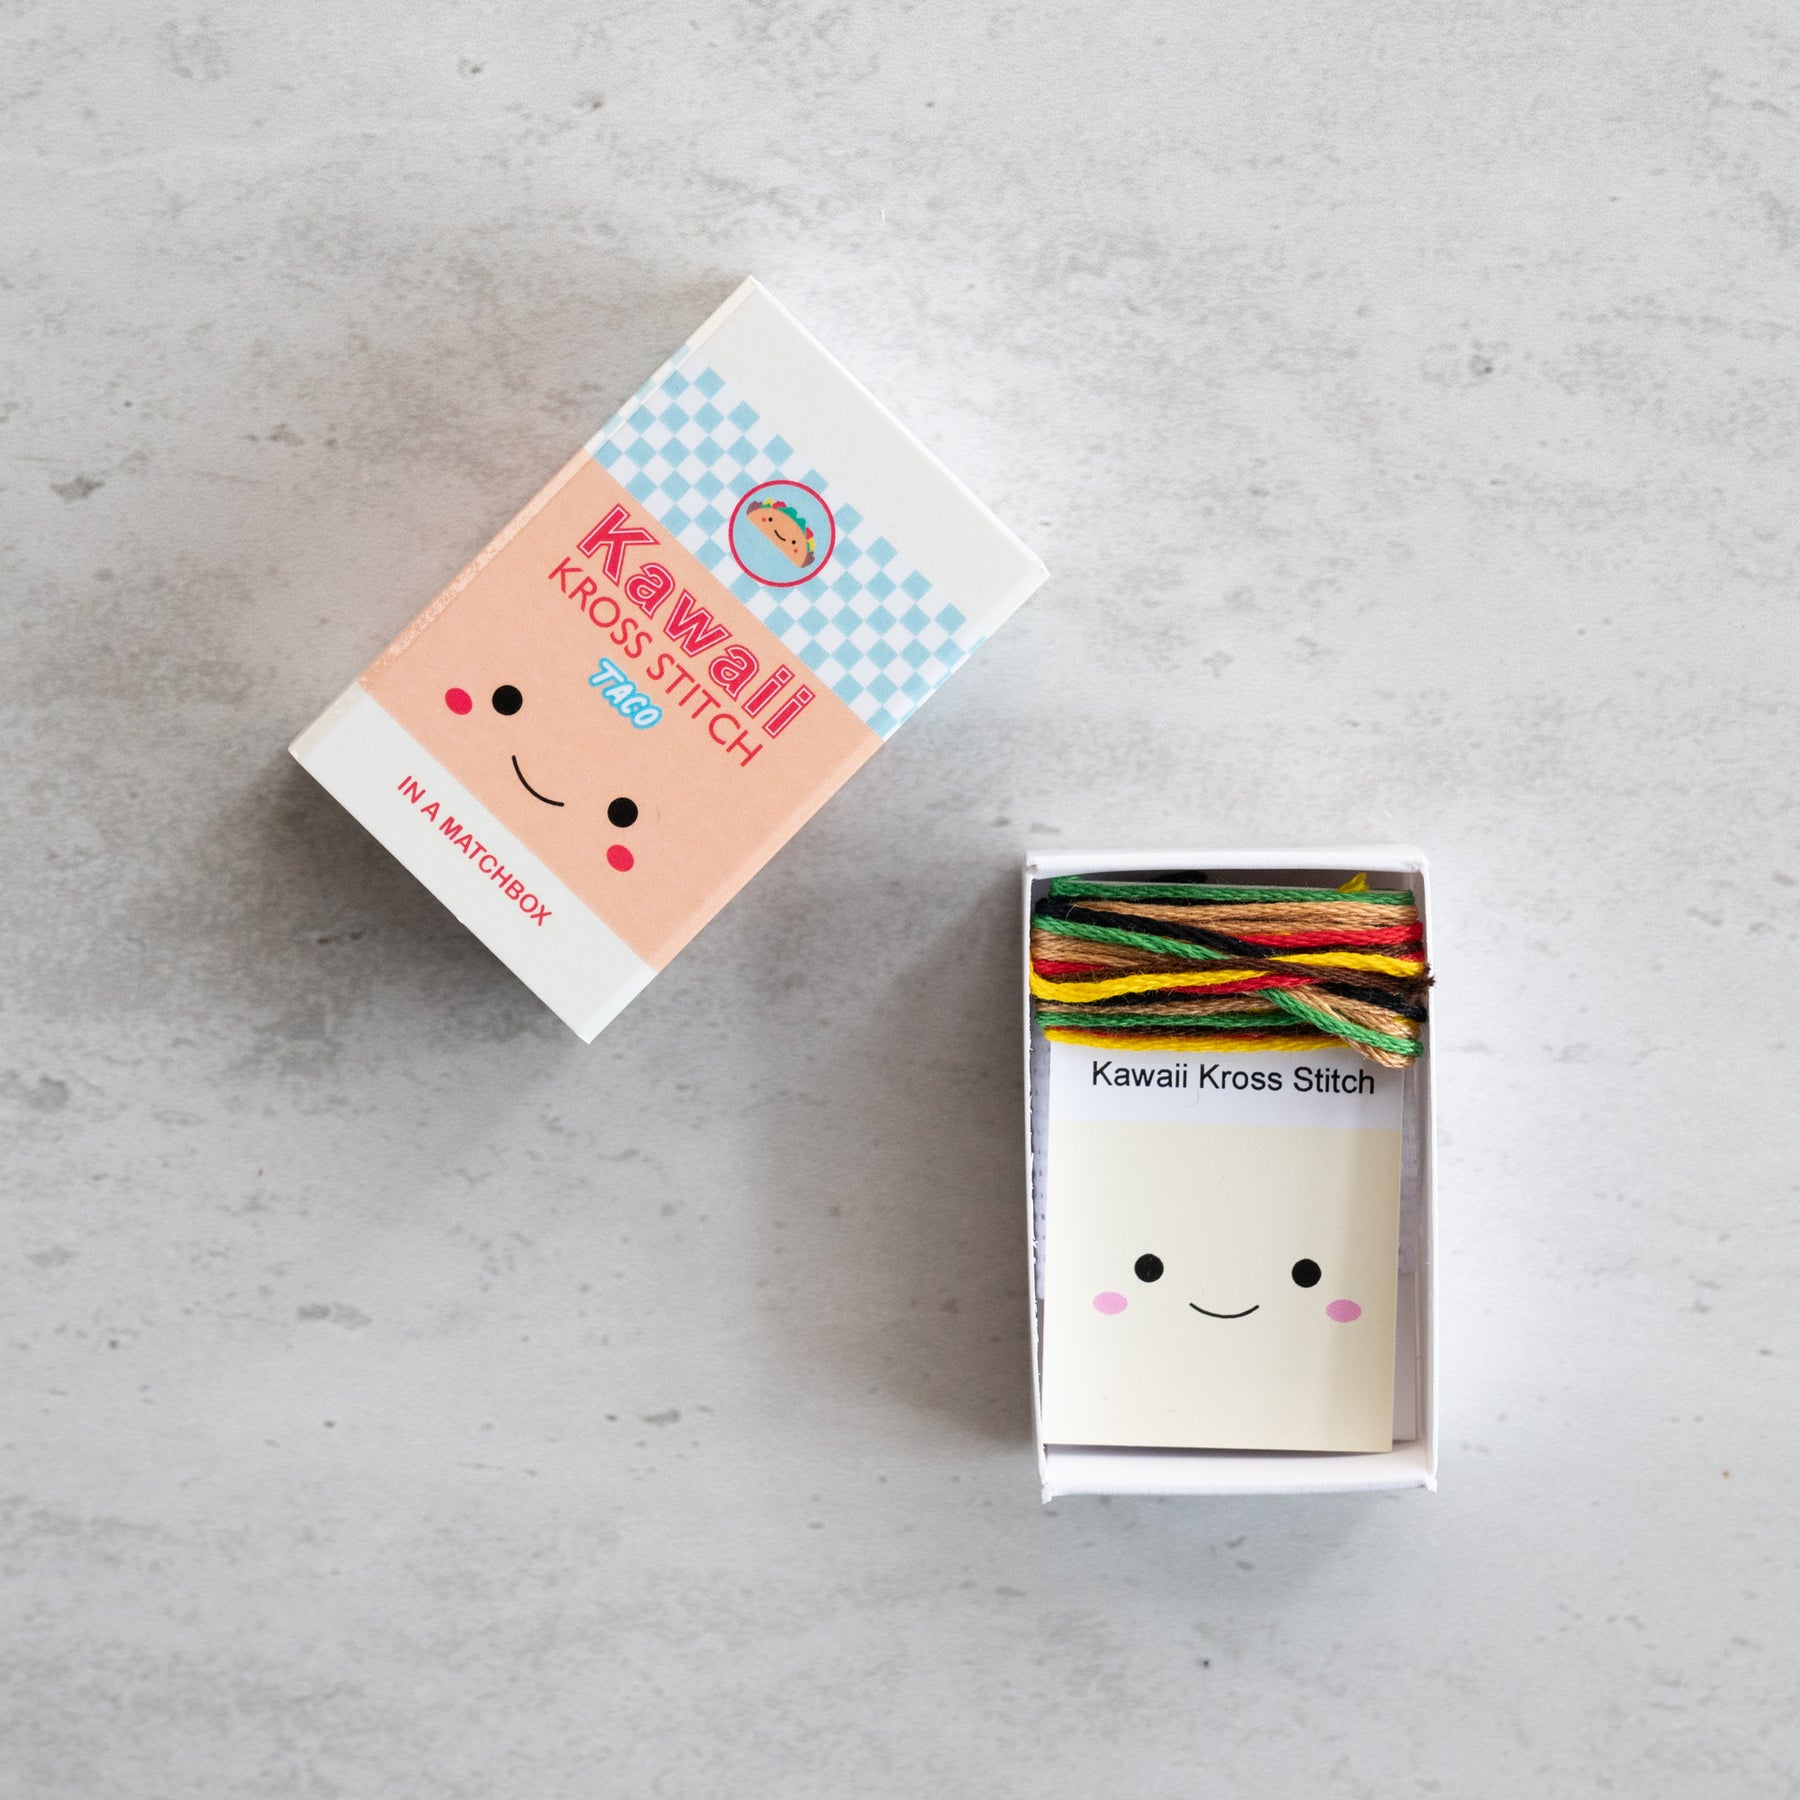 Mini Cross Stitch Kit With Kawaii Taco Design